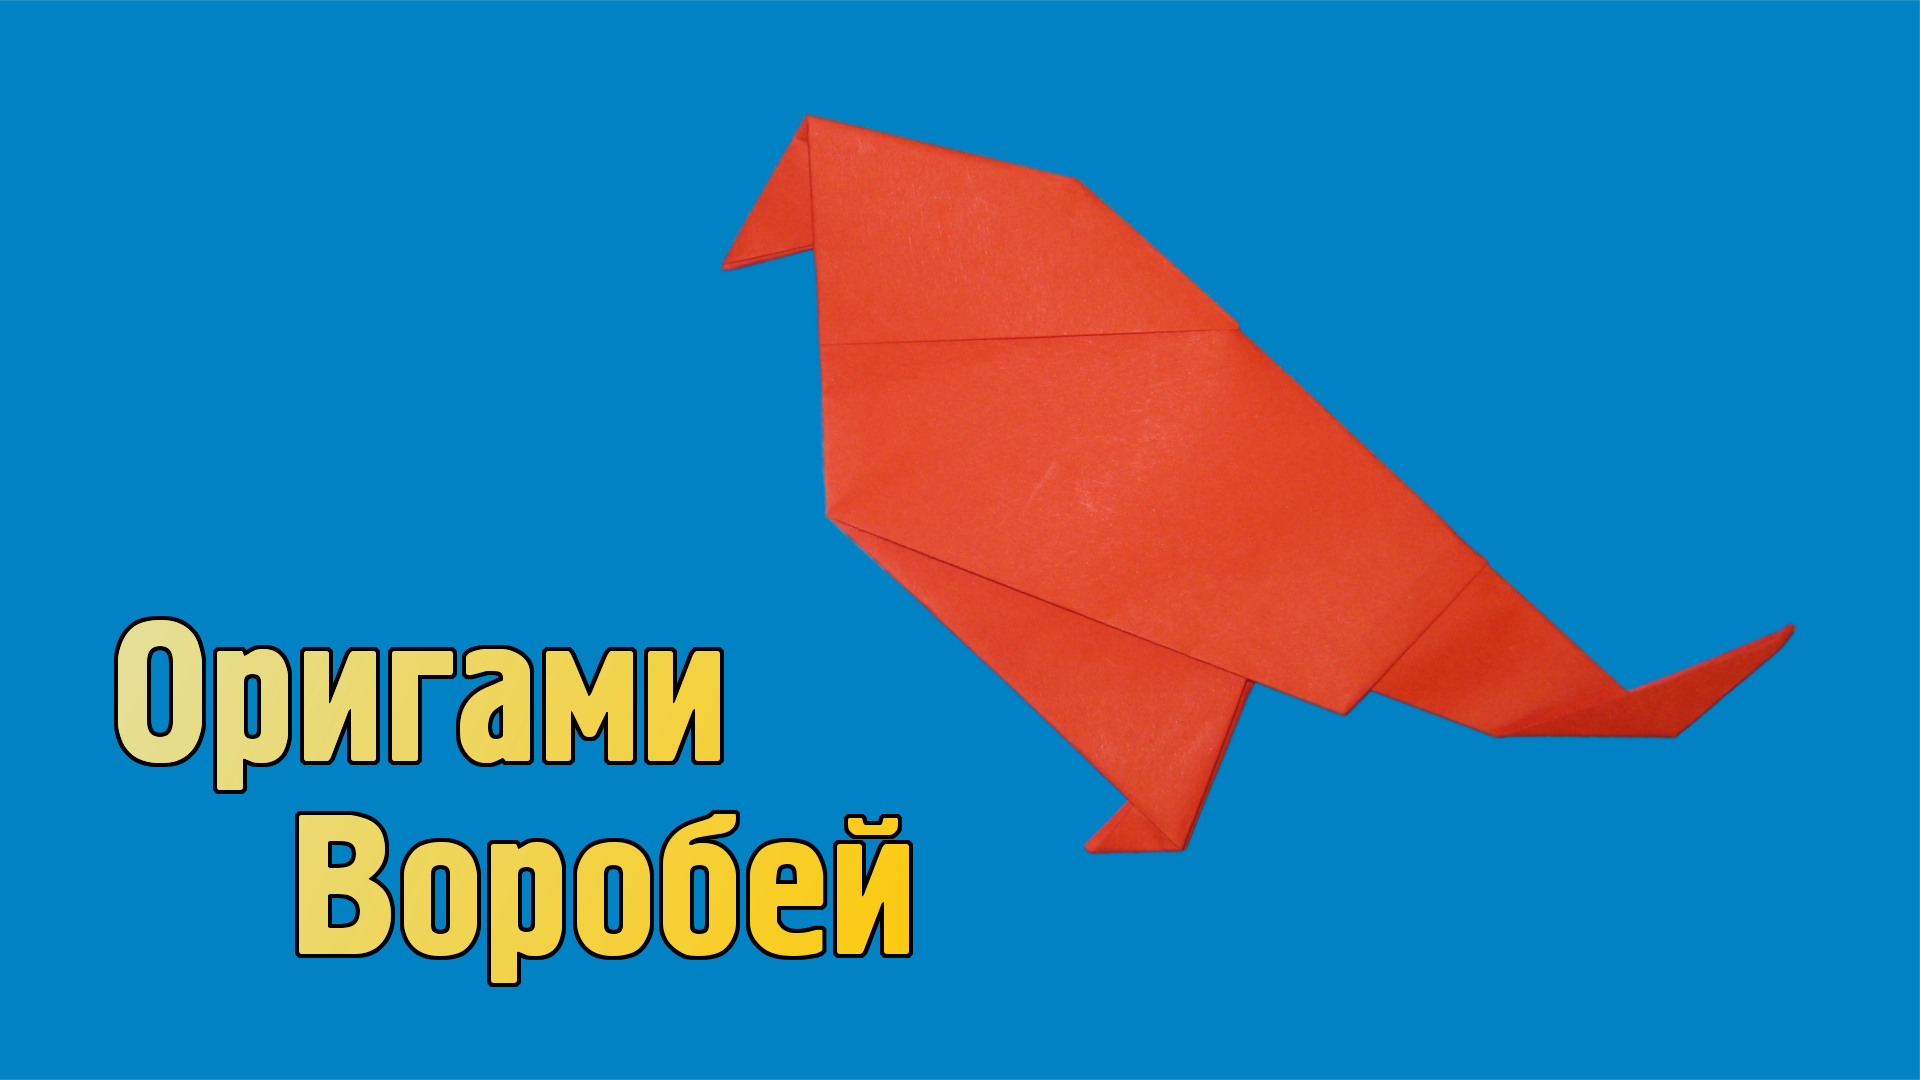 Как сделать Воробья из бумаги своими руками | Оригами Воробей для детей | Фигурка Птицы без клея